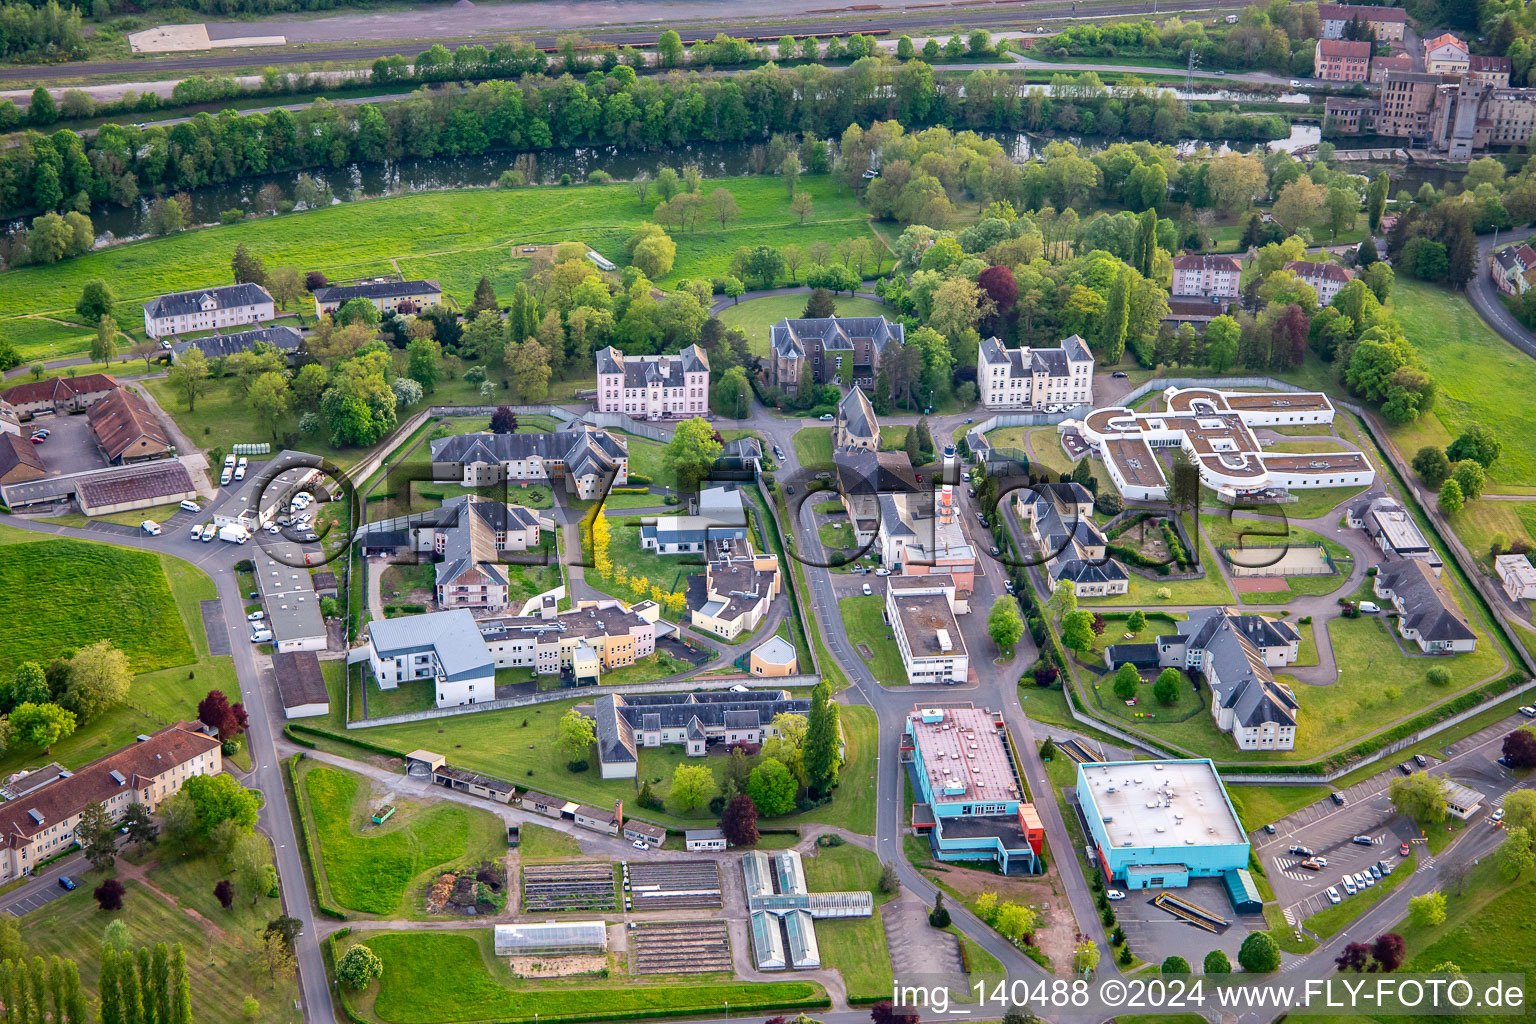 Vue aérienne de Ctre Hospitalier Spécialisé à le quartier Zone Industrielle du Grand Bois Fayencerie in Saargemünd dans le département Moselle, France